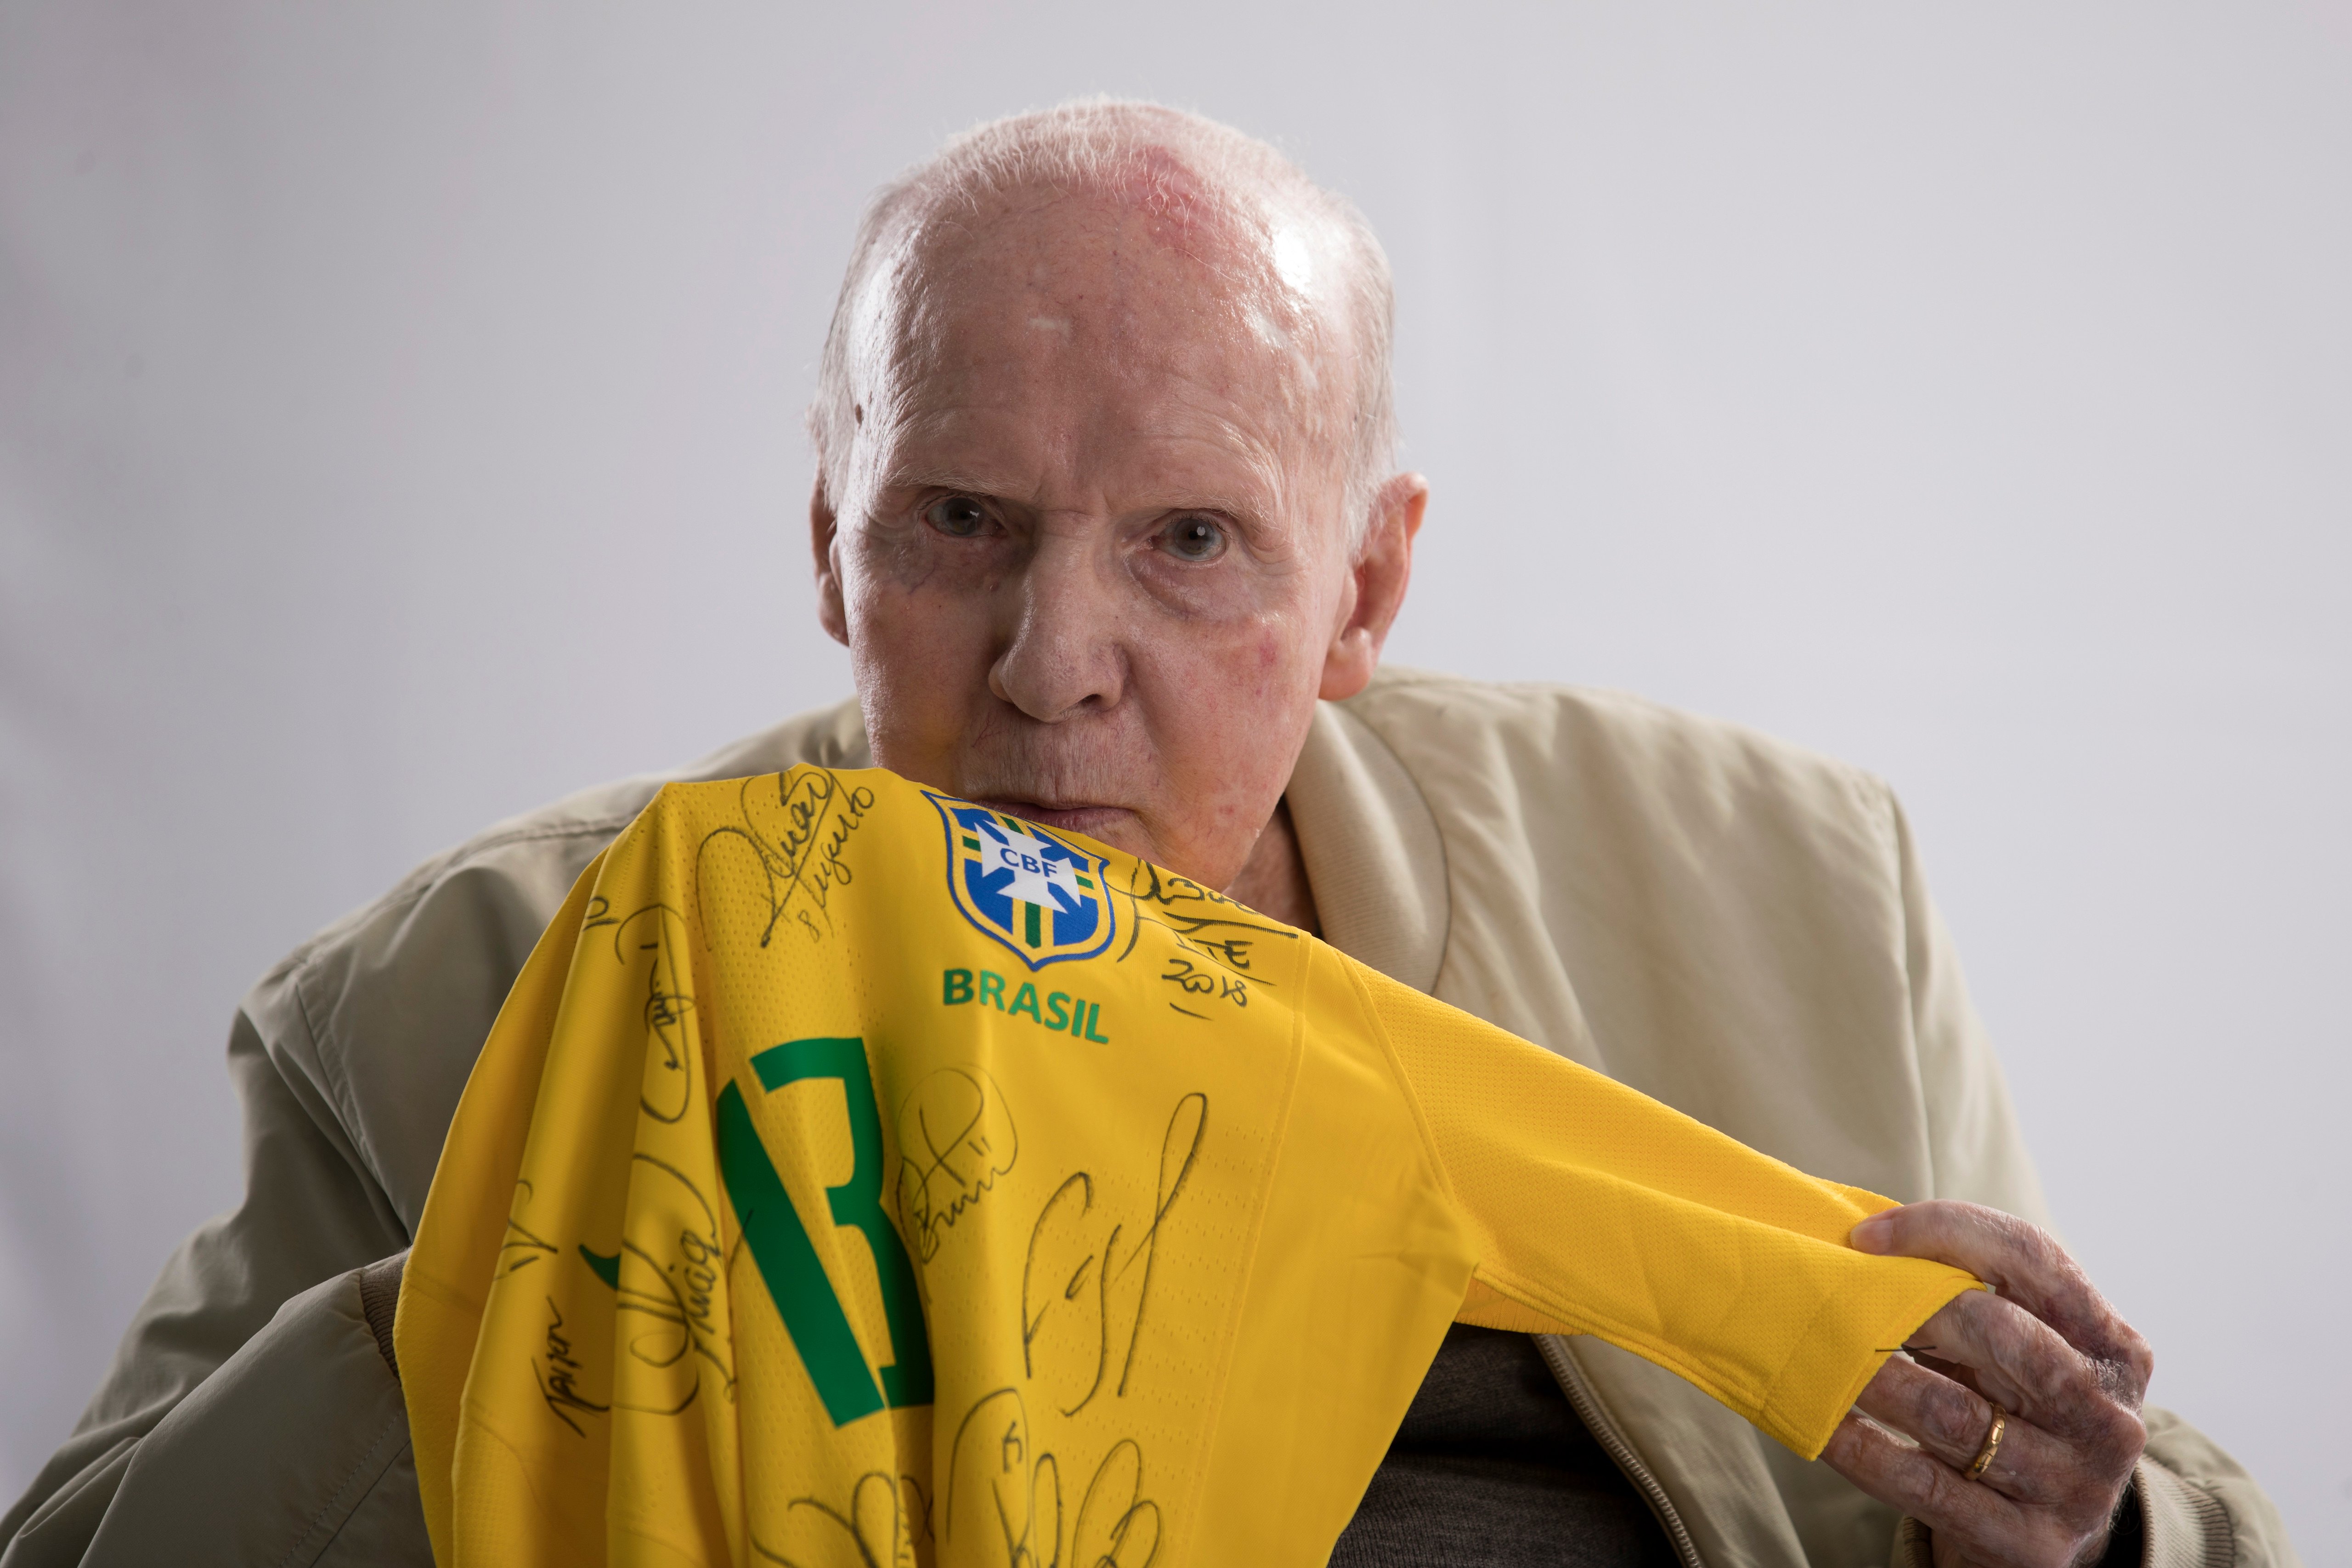 Icônico treinador e ex-jogador da Seleção Brasileira faleceu na noite desta sexta-feira (6), aos 92 anos, em decorrência de uma falência múltipla de órgãos